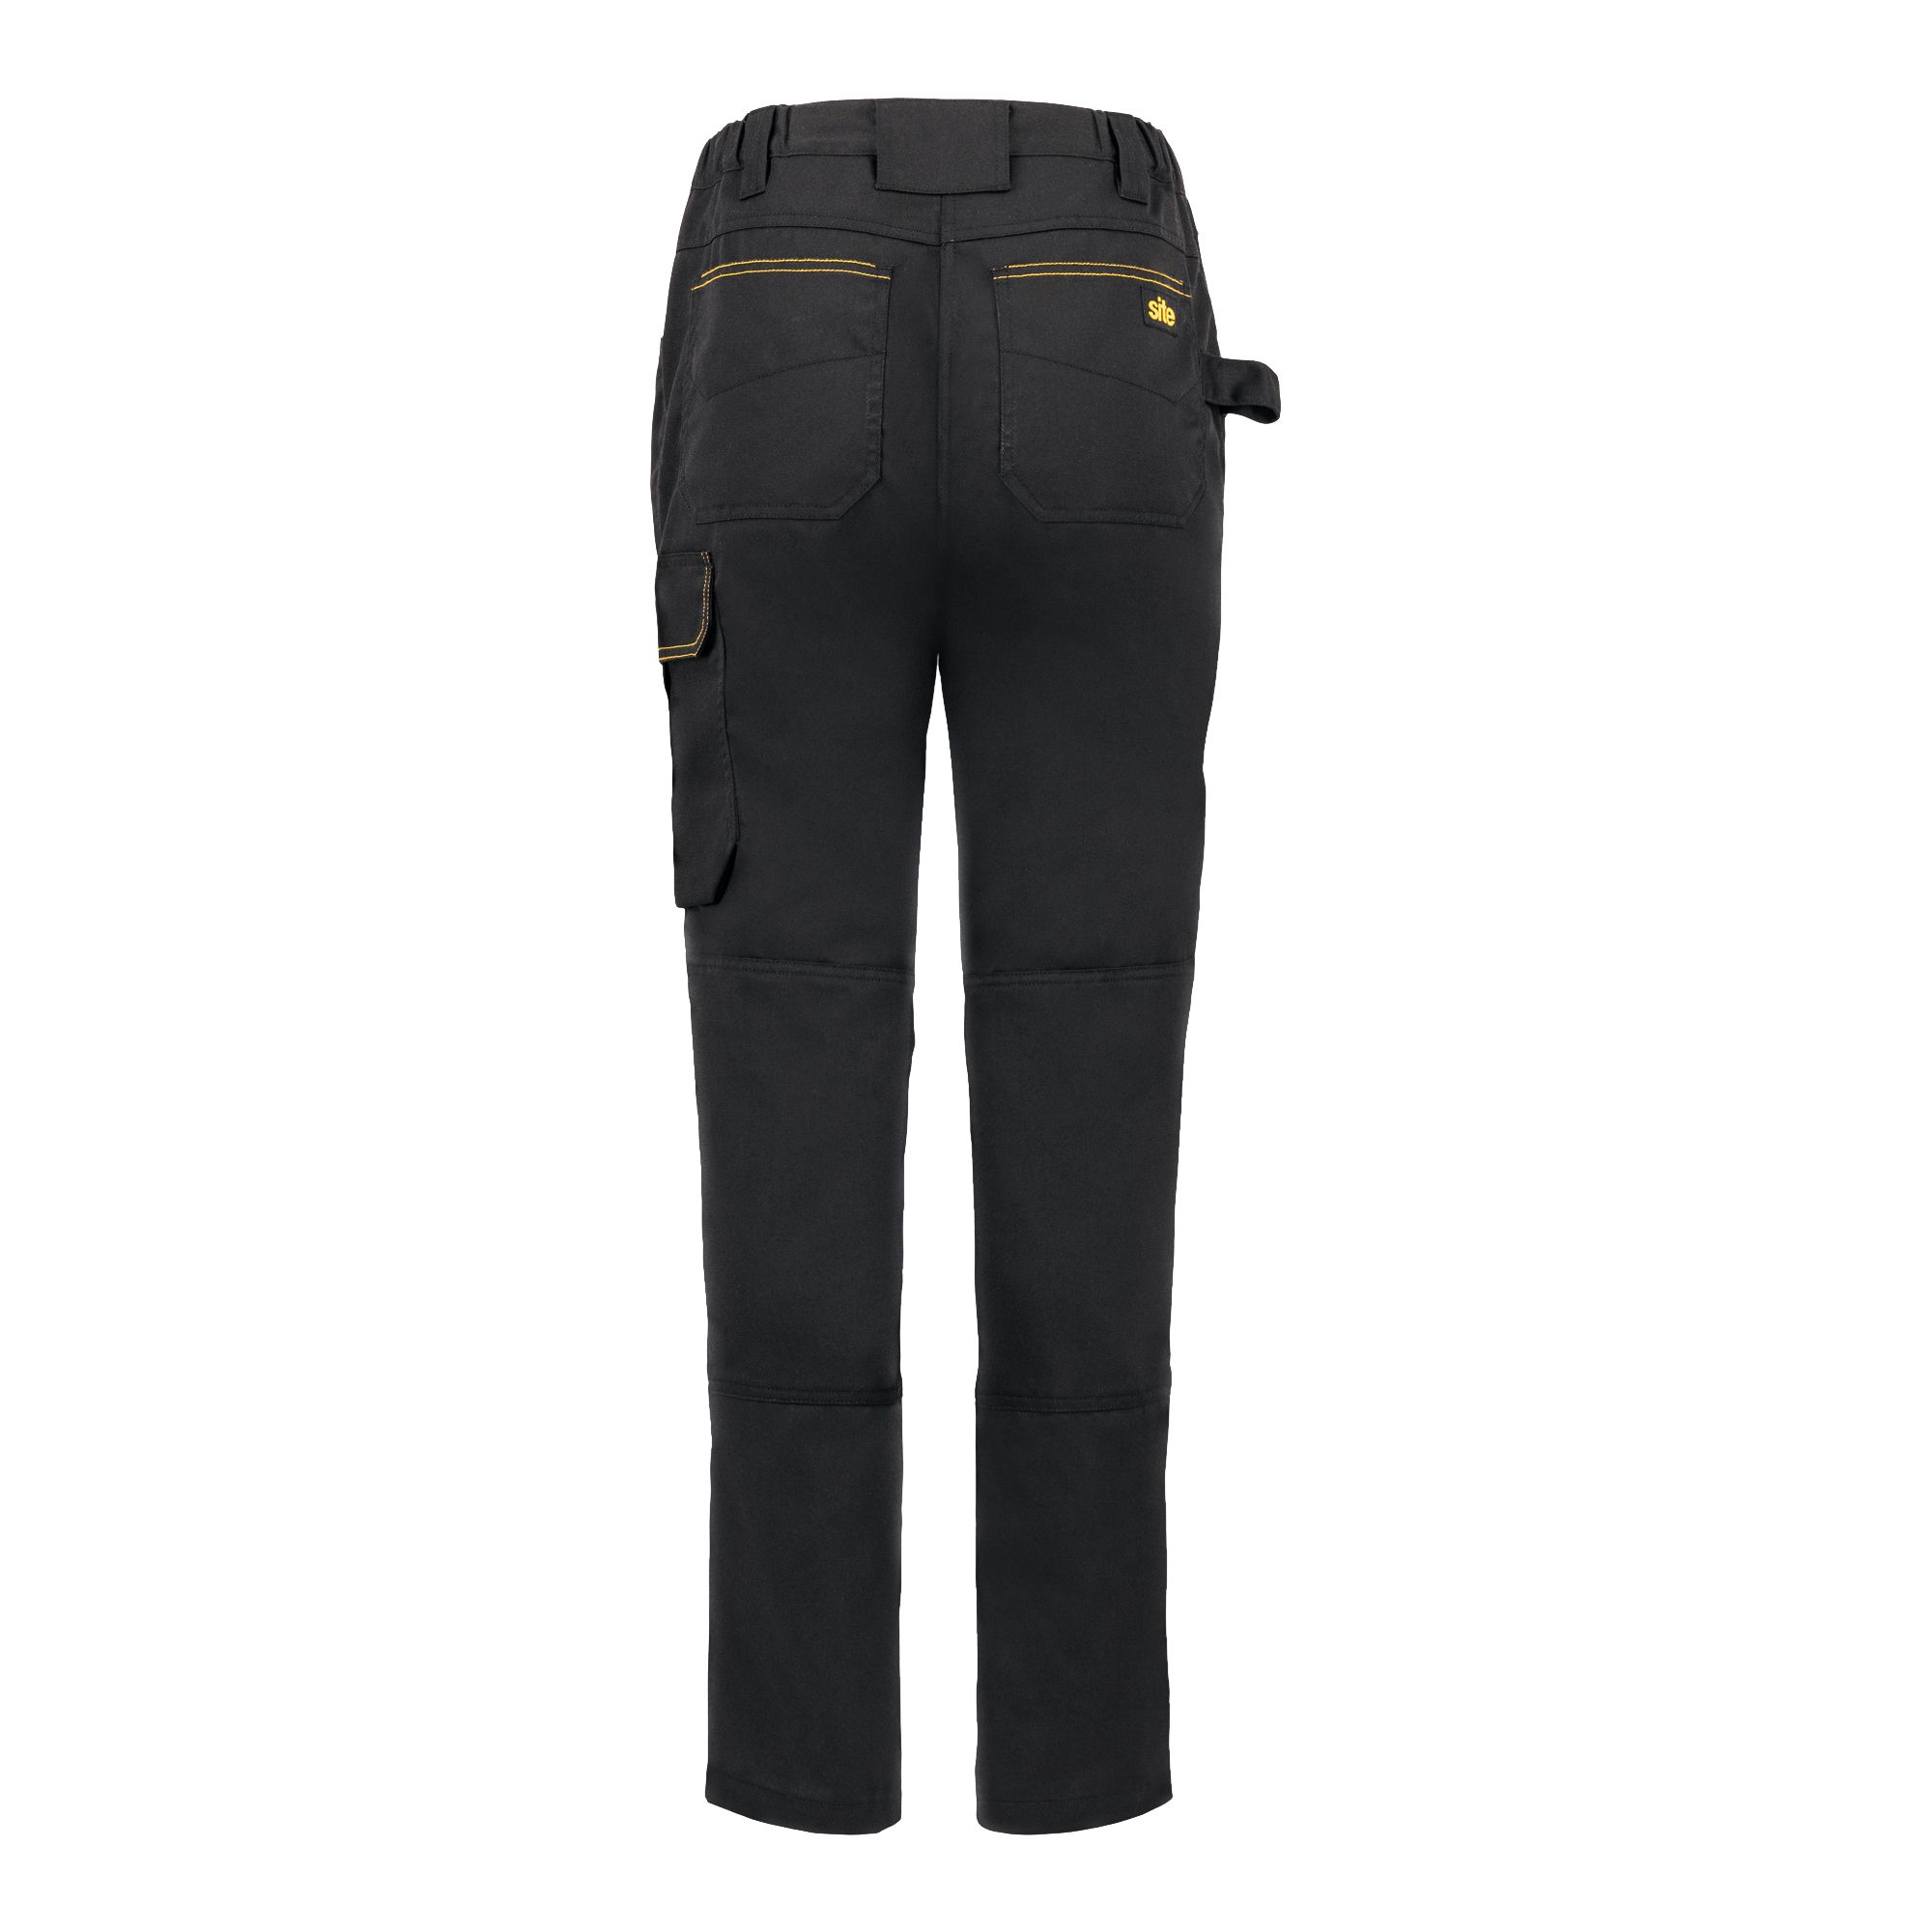 Site Heyward Black Ladies trousers, Size 14 L31"